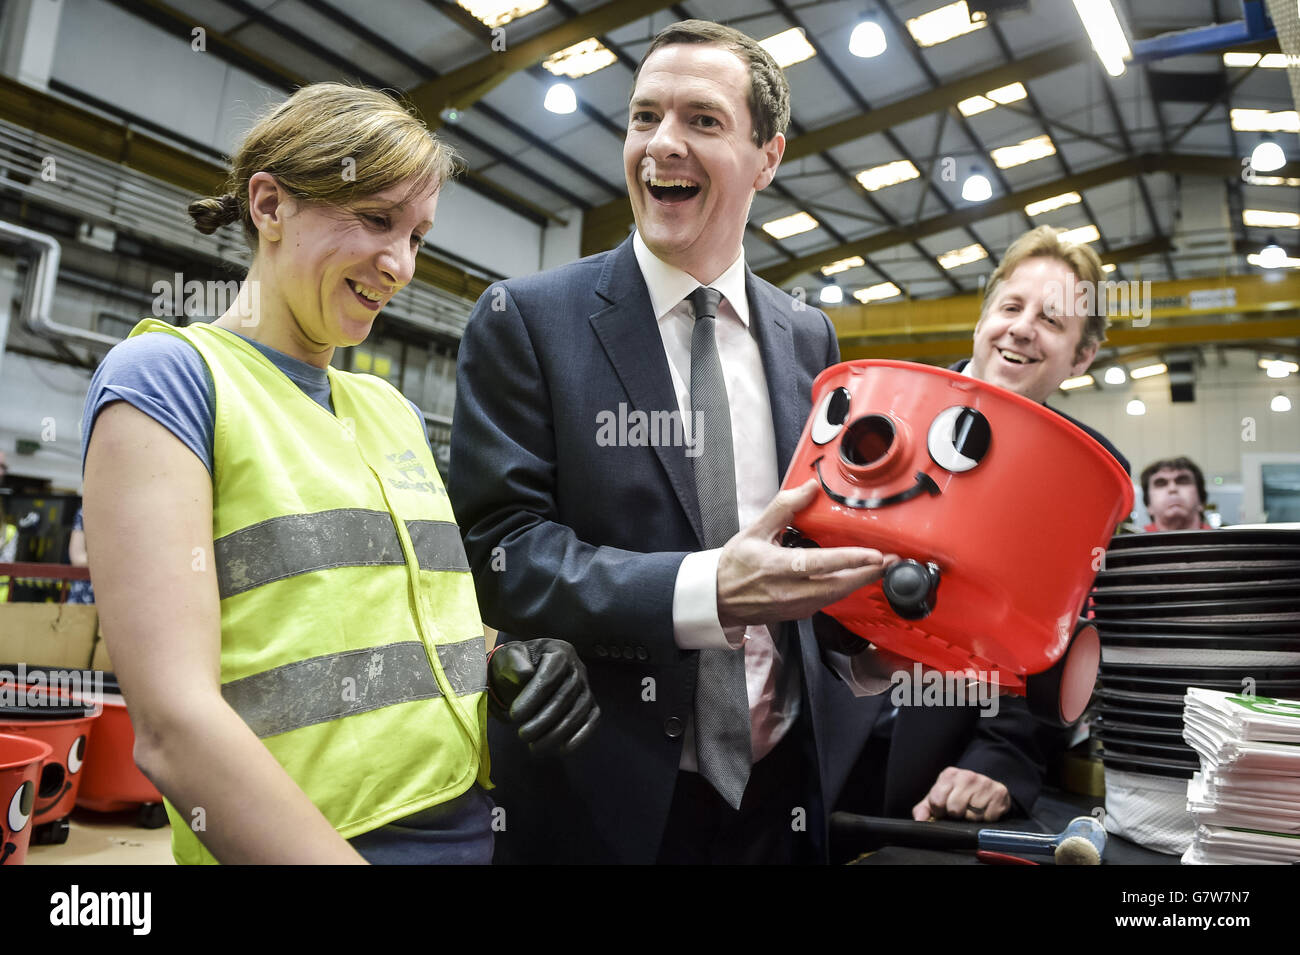 Schatzkanzler George Osborne teilt einen Witz und bewundert seine praktische Arbeit, nachdem er das Gesicht auf einem "Henry"-Vakuum zusammengelegt hat, das von der Fabrikarbeiterin Inga Ciplyte, 29, aus Exeter, während seines Besuchs in der Numatic-Fabrik gezeigt wurde, die die berühmte "Henry"-Vakuummarke in Chard, Somerset, produziert. Stockfoto